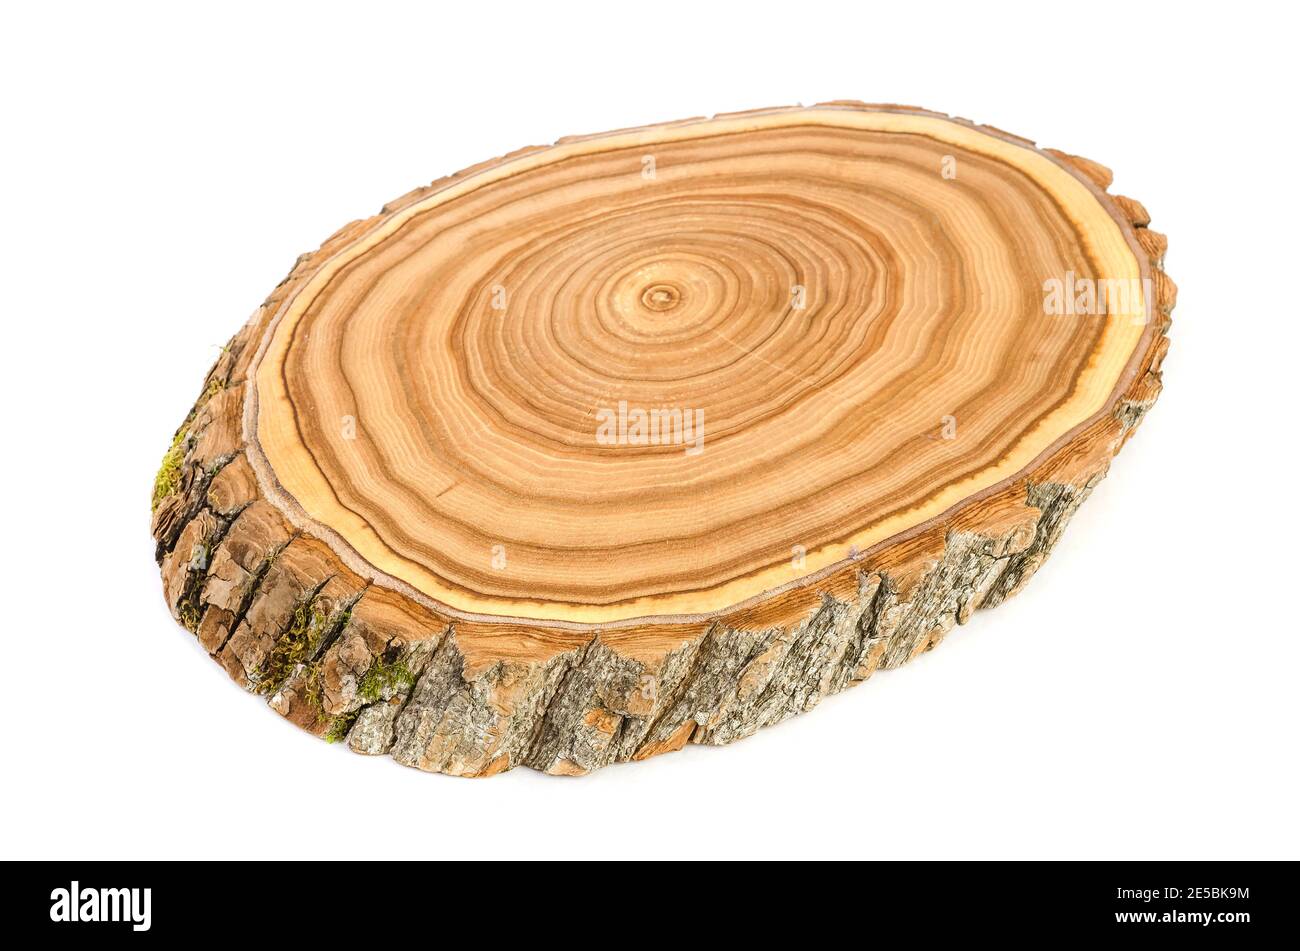 Sezione trasversale di una fetta di tronco di albero di legno tagliata con crepe e anelli ondulati dai boschi Foto Stock